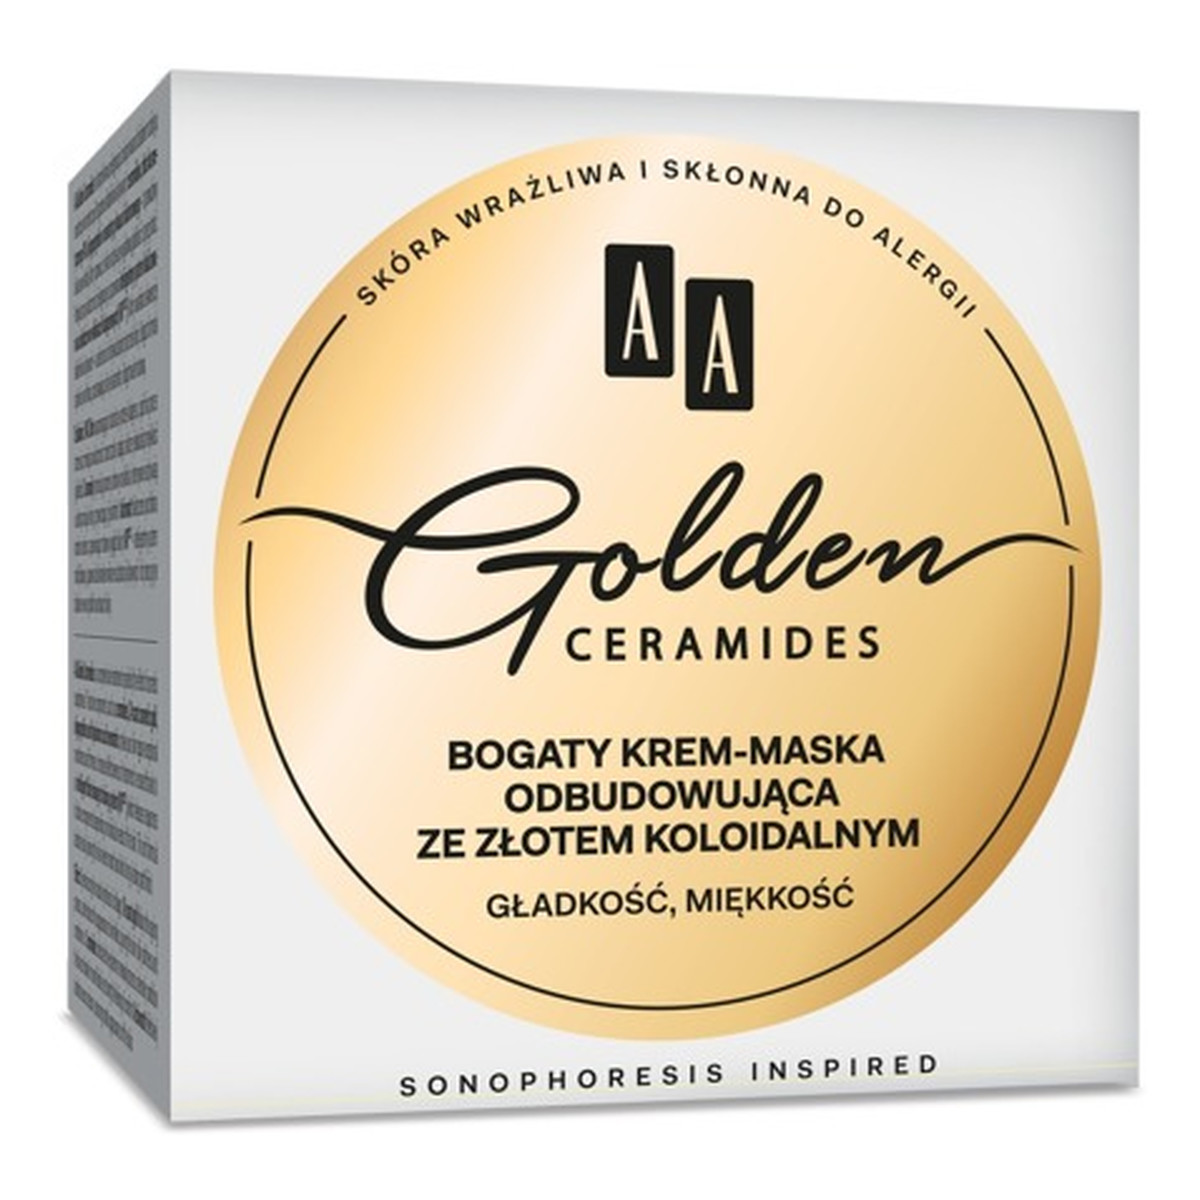 AA Golden Ceramides Krem-maska odbudowująca ze złotem koloidalnym 50ml